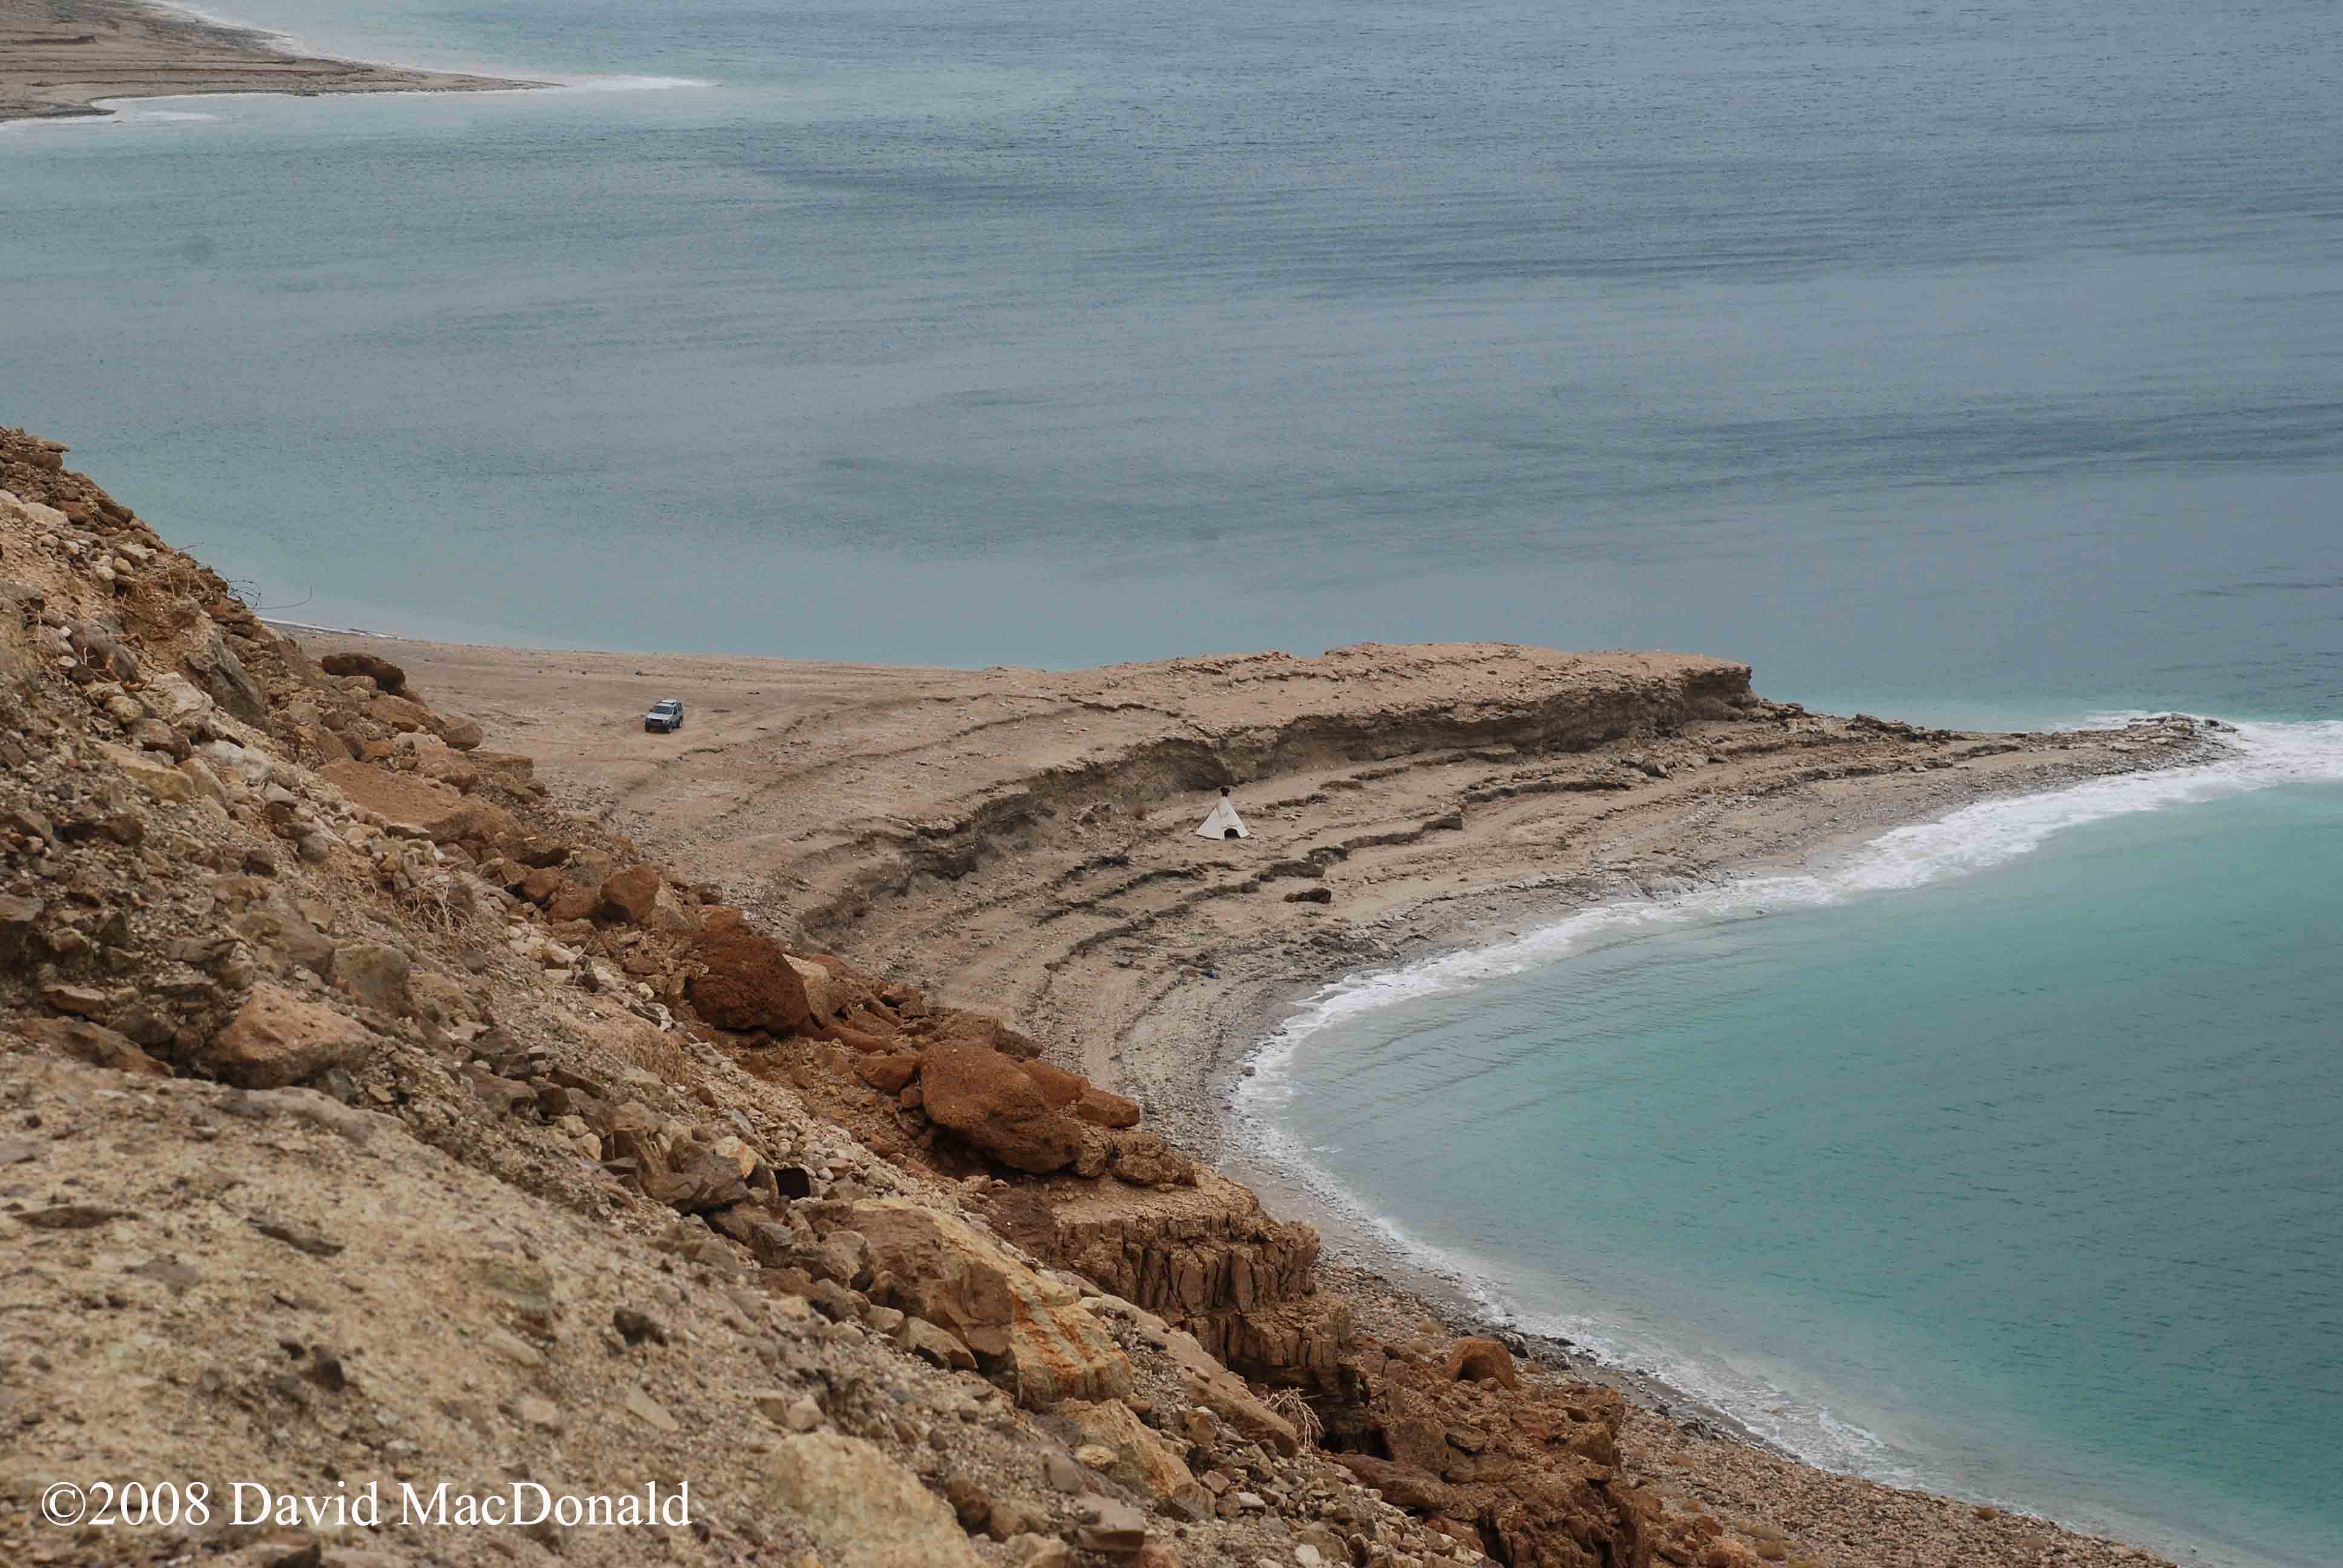 Dead sea - Israel